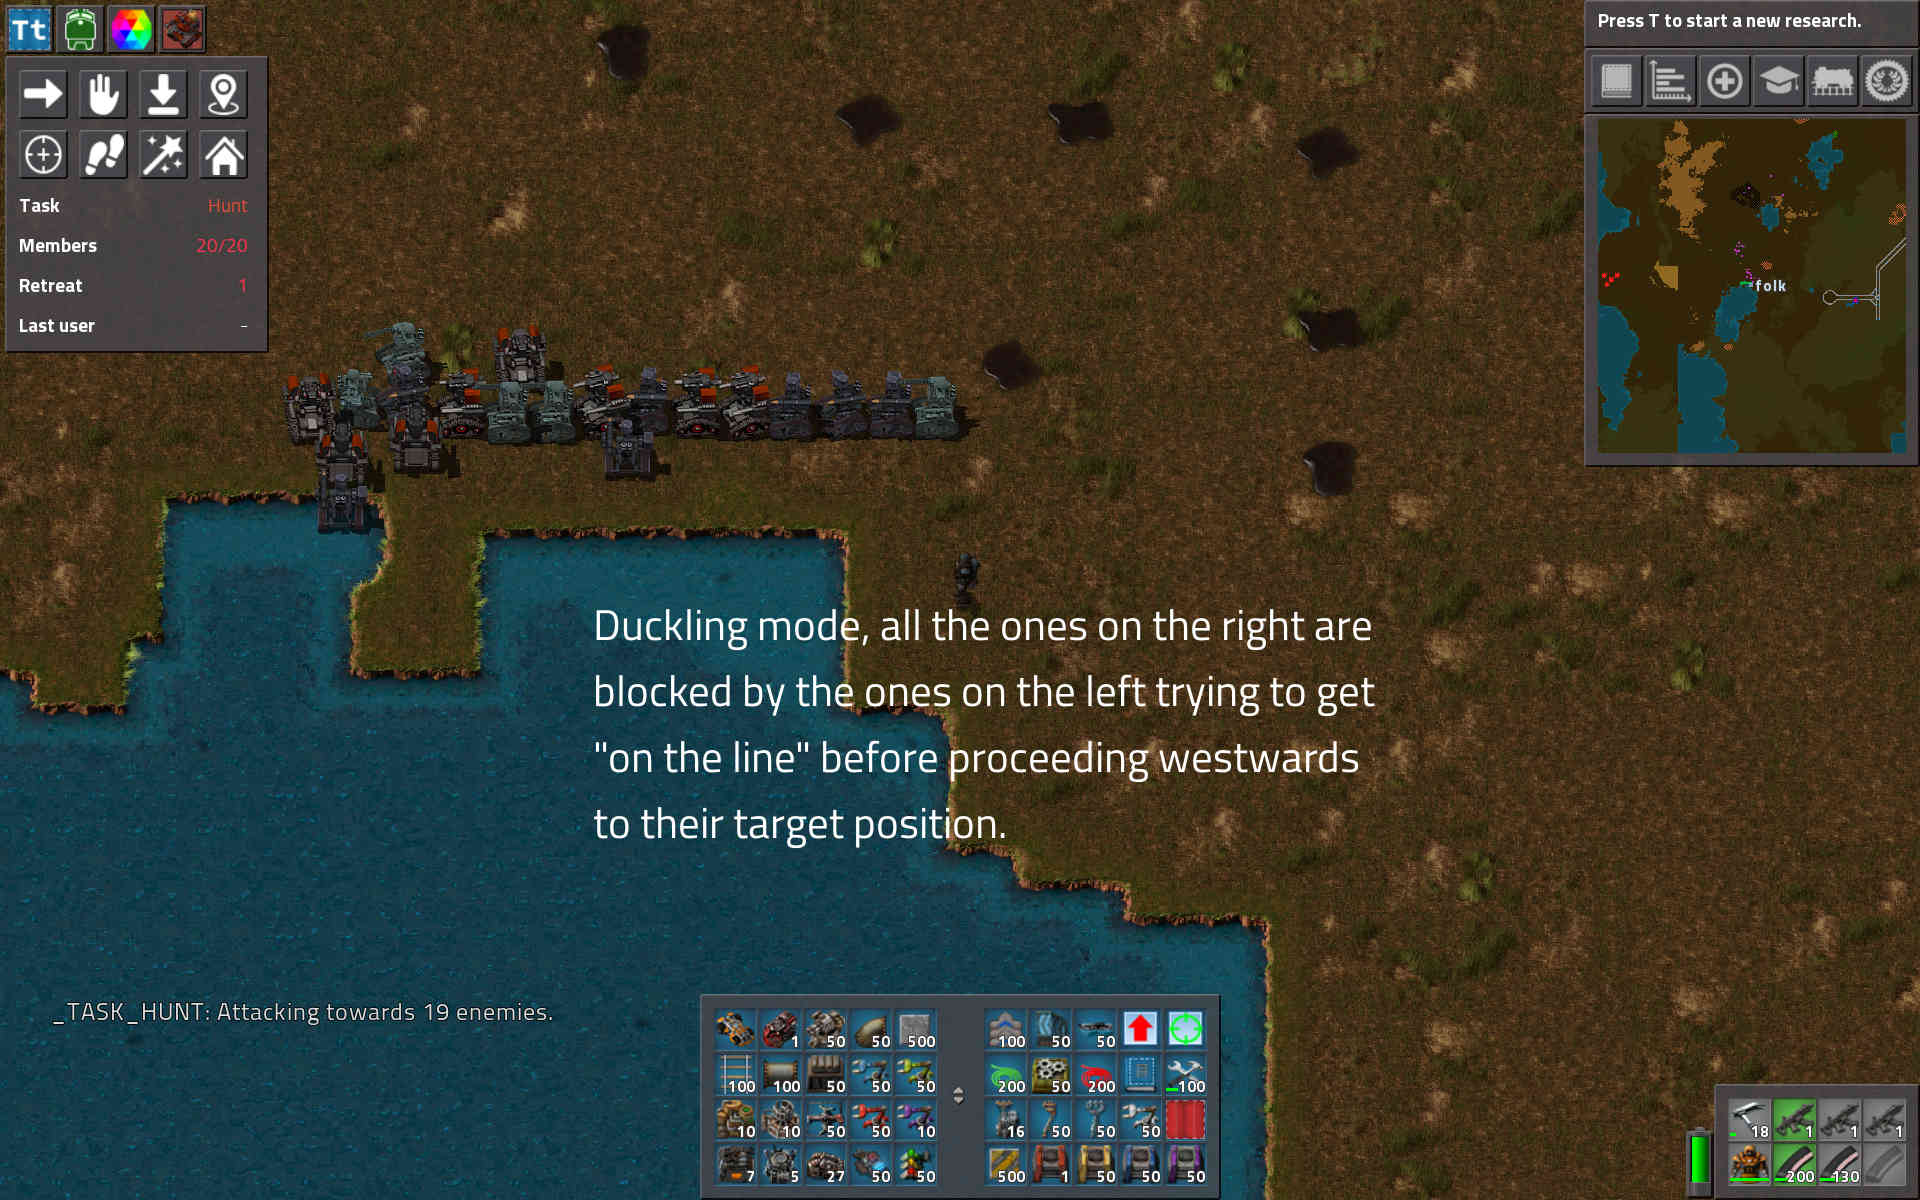 screenshot 1, duckling mode